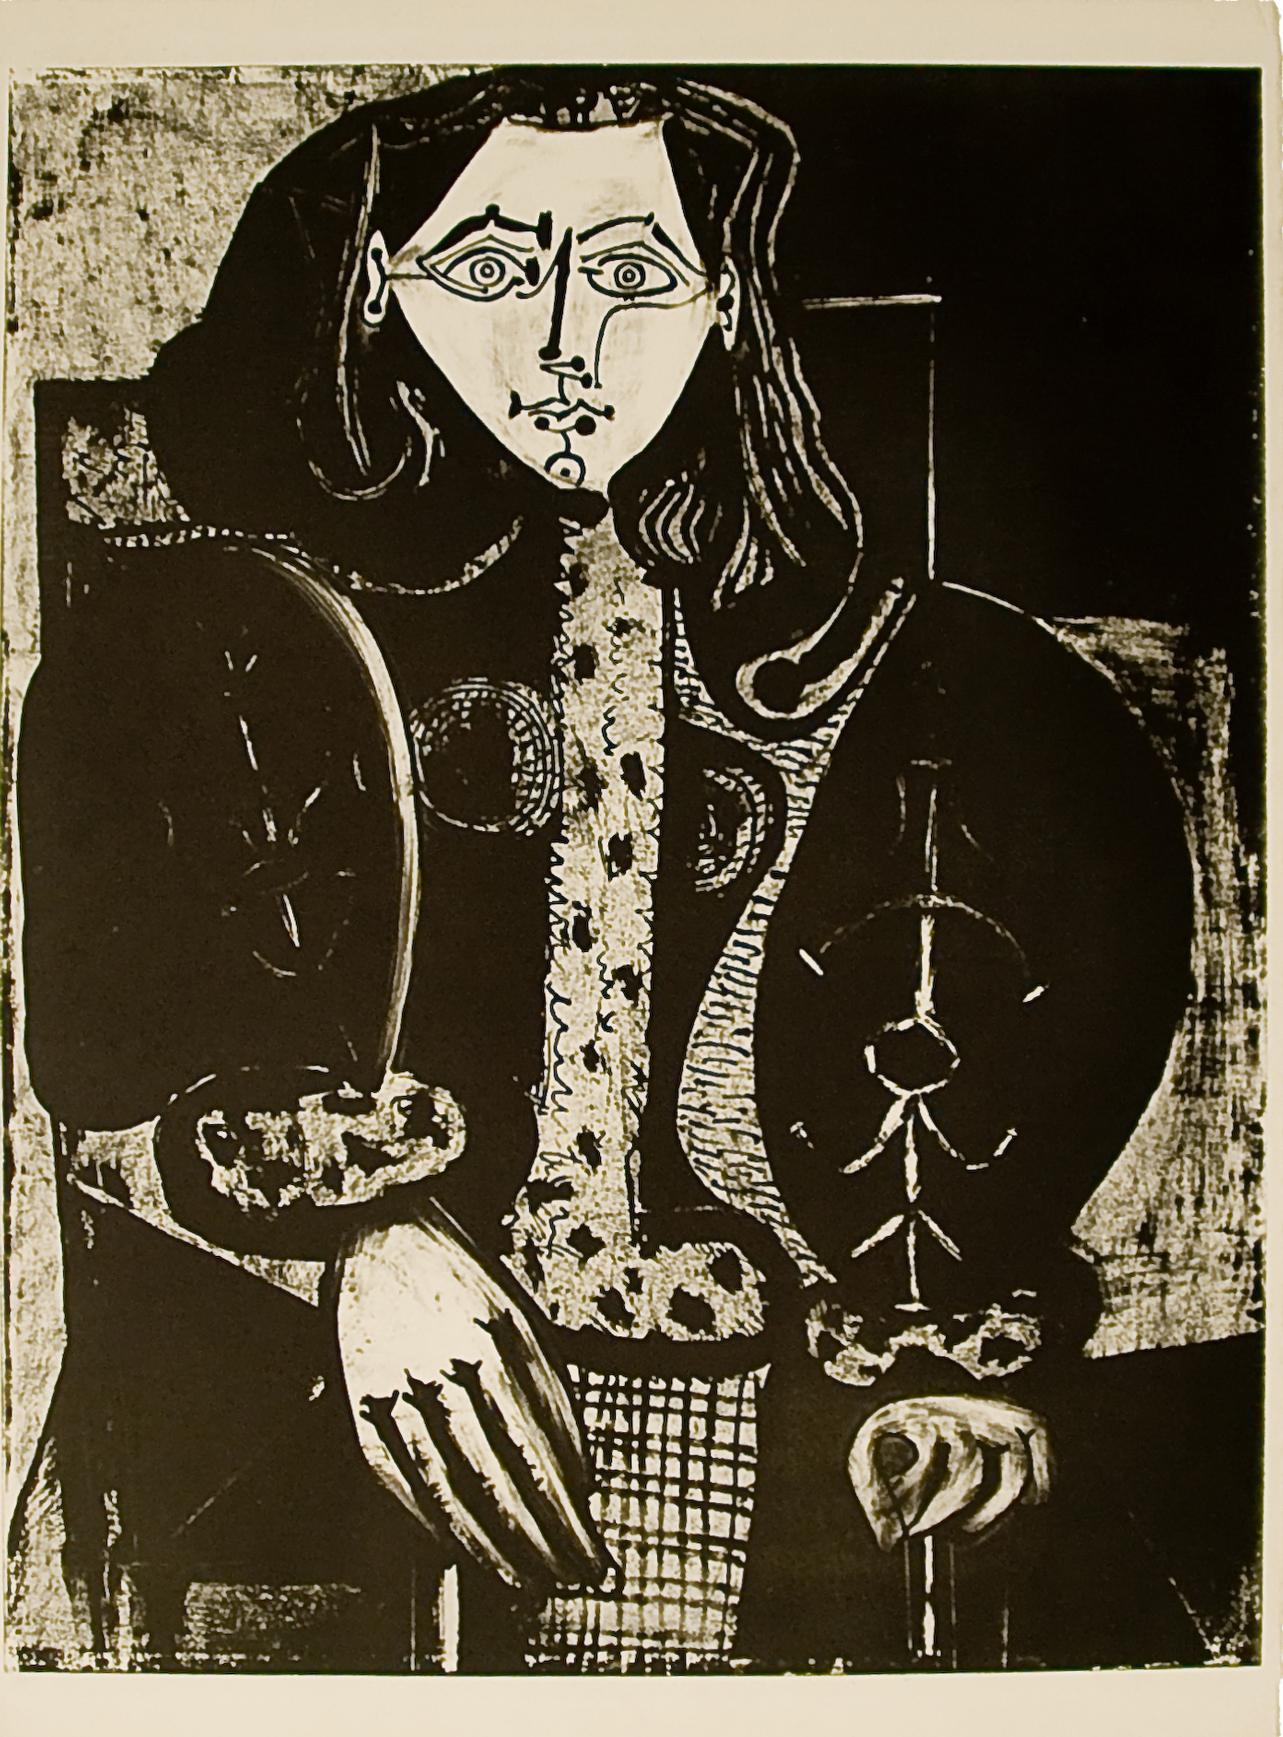 Pablo Picasso: Femme au Fauteuil No. 1 (d'après le rouge) (M134)